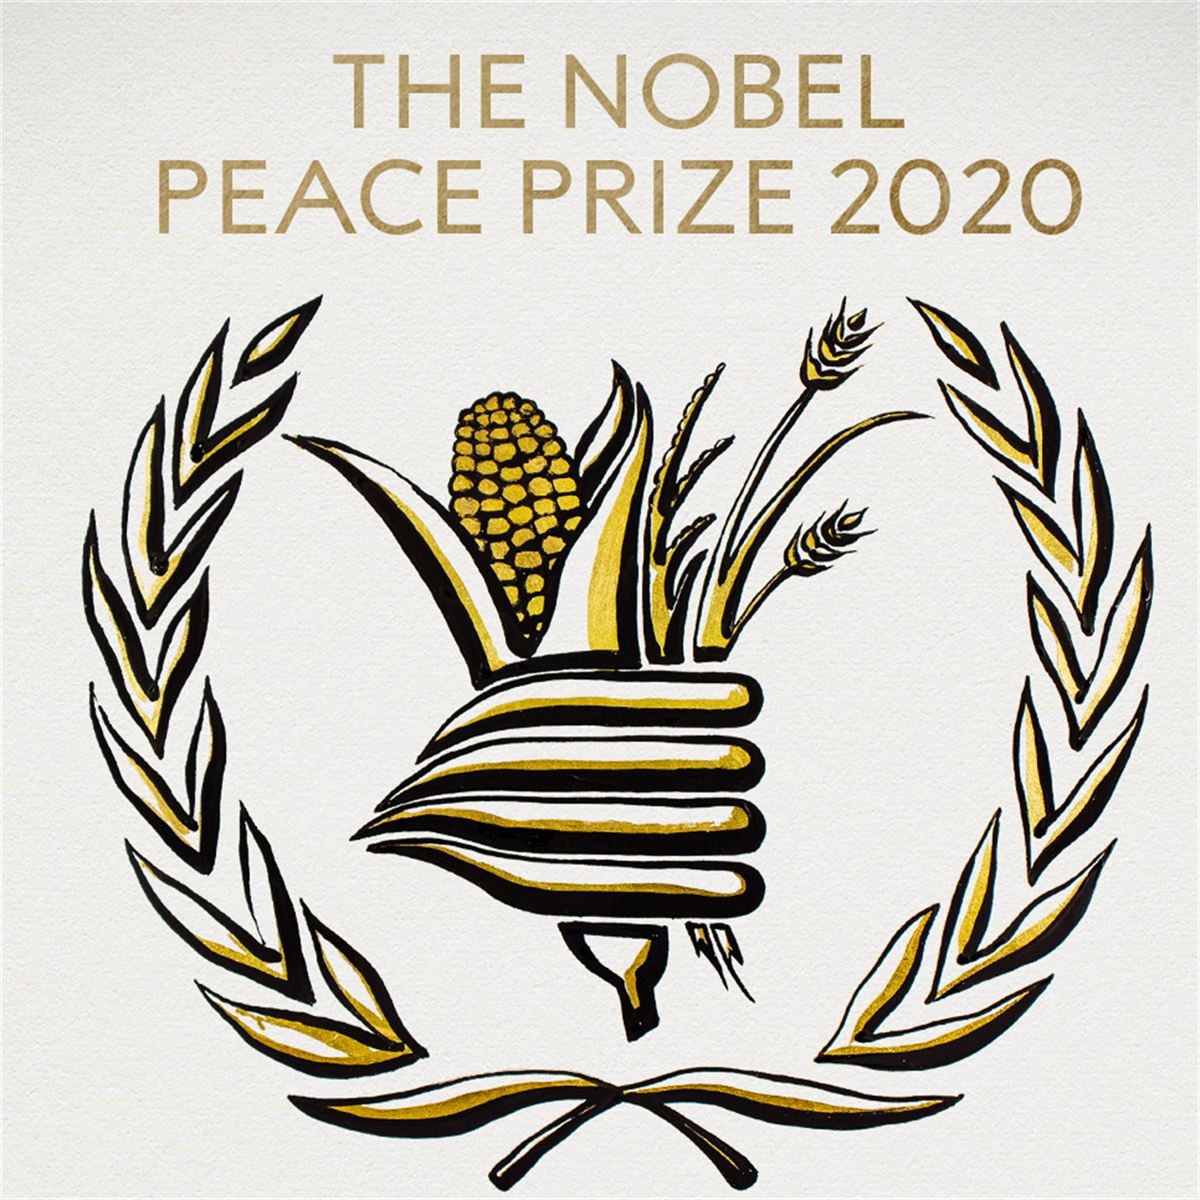 Elikagaien Mundu Programaren logoa, @NobelPrize-k egindako ilustrazio batean. 